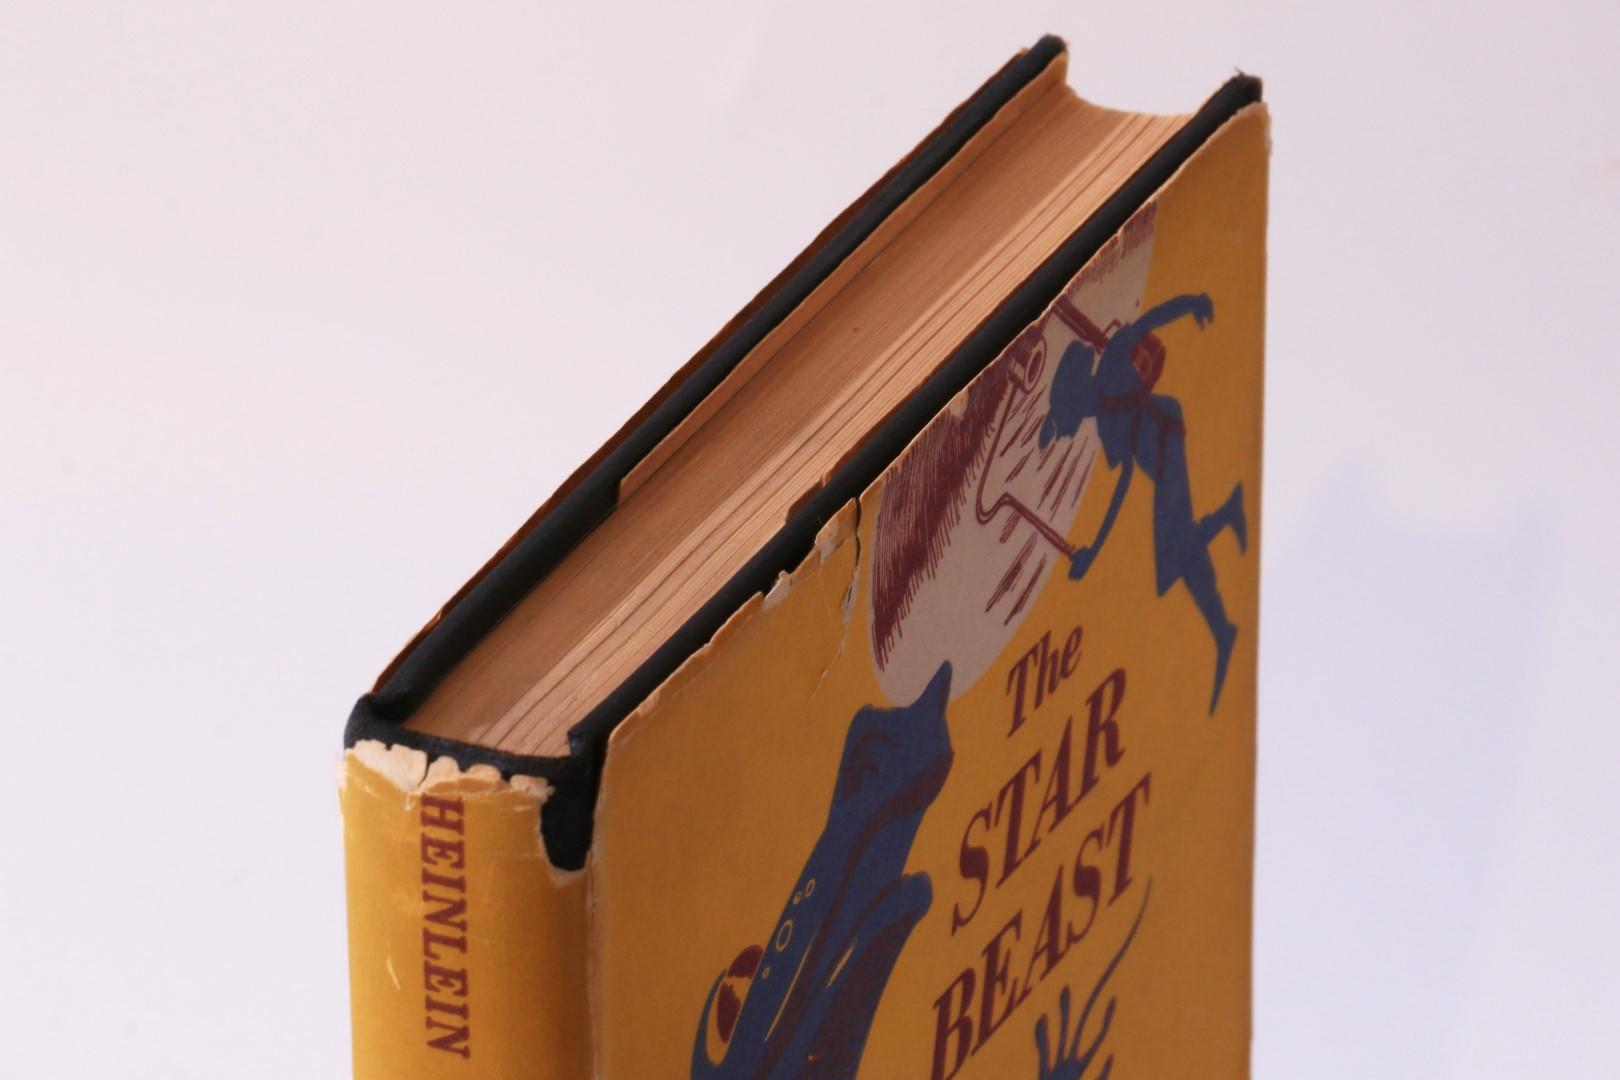 Robert A. Heinlein - The Star Beast - Scribners, 1954, First Edition.